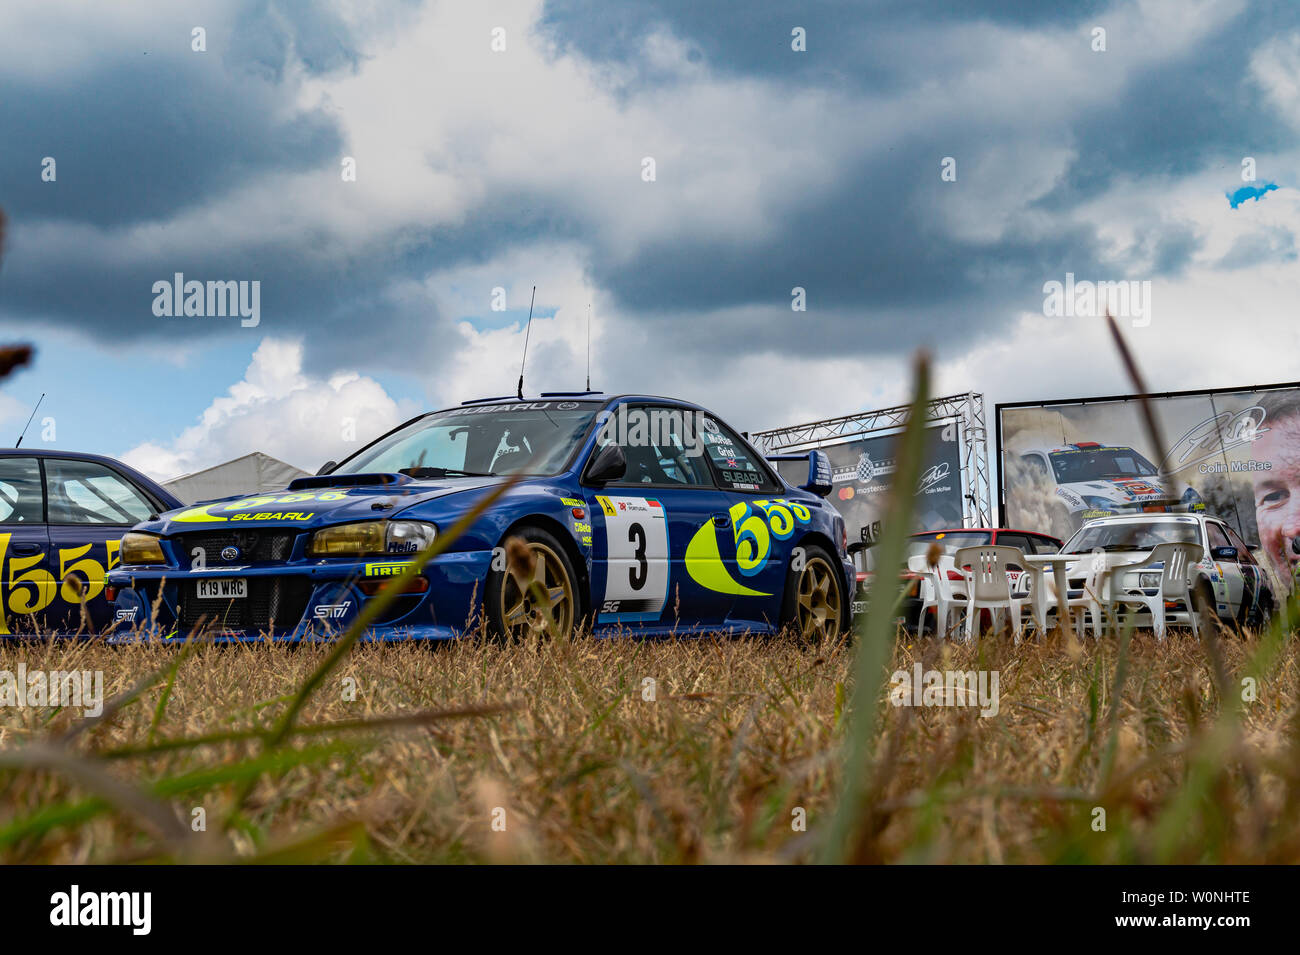 Colin Mcrae, el Subaru Impreza 22b WRC Rally Car en el Festival de Velocidad de Goodwood 2018 Foto de stock